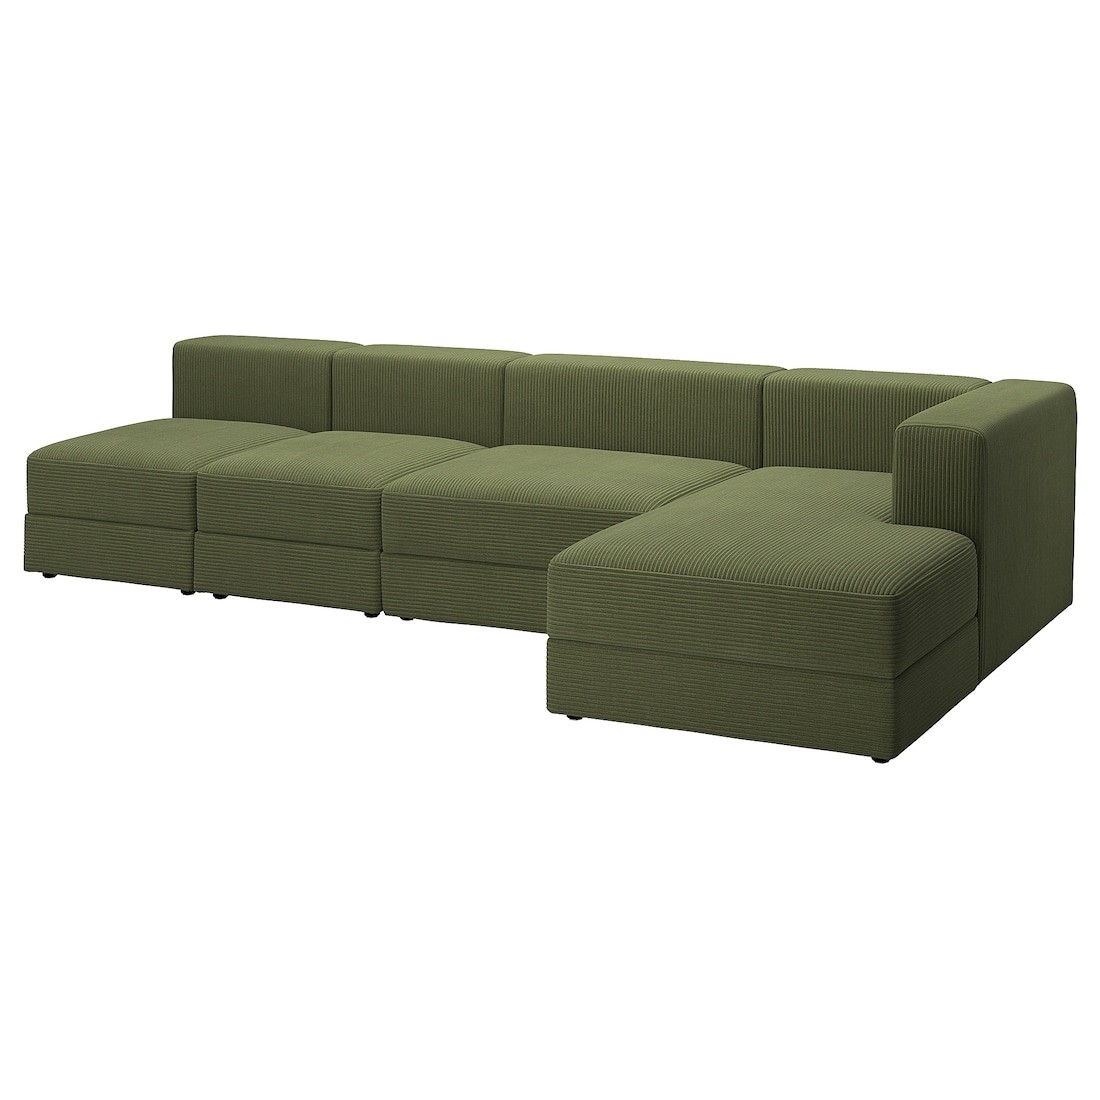 JÄTTEBO 4, 5-местный модульный диван с козеткой, правосторонний / Samsala тёмный желто-зеленый